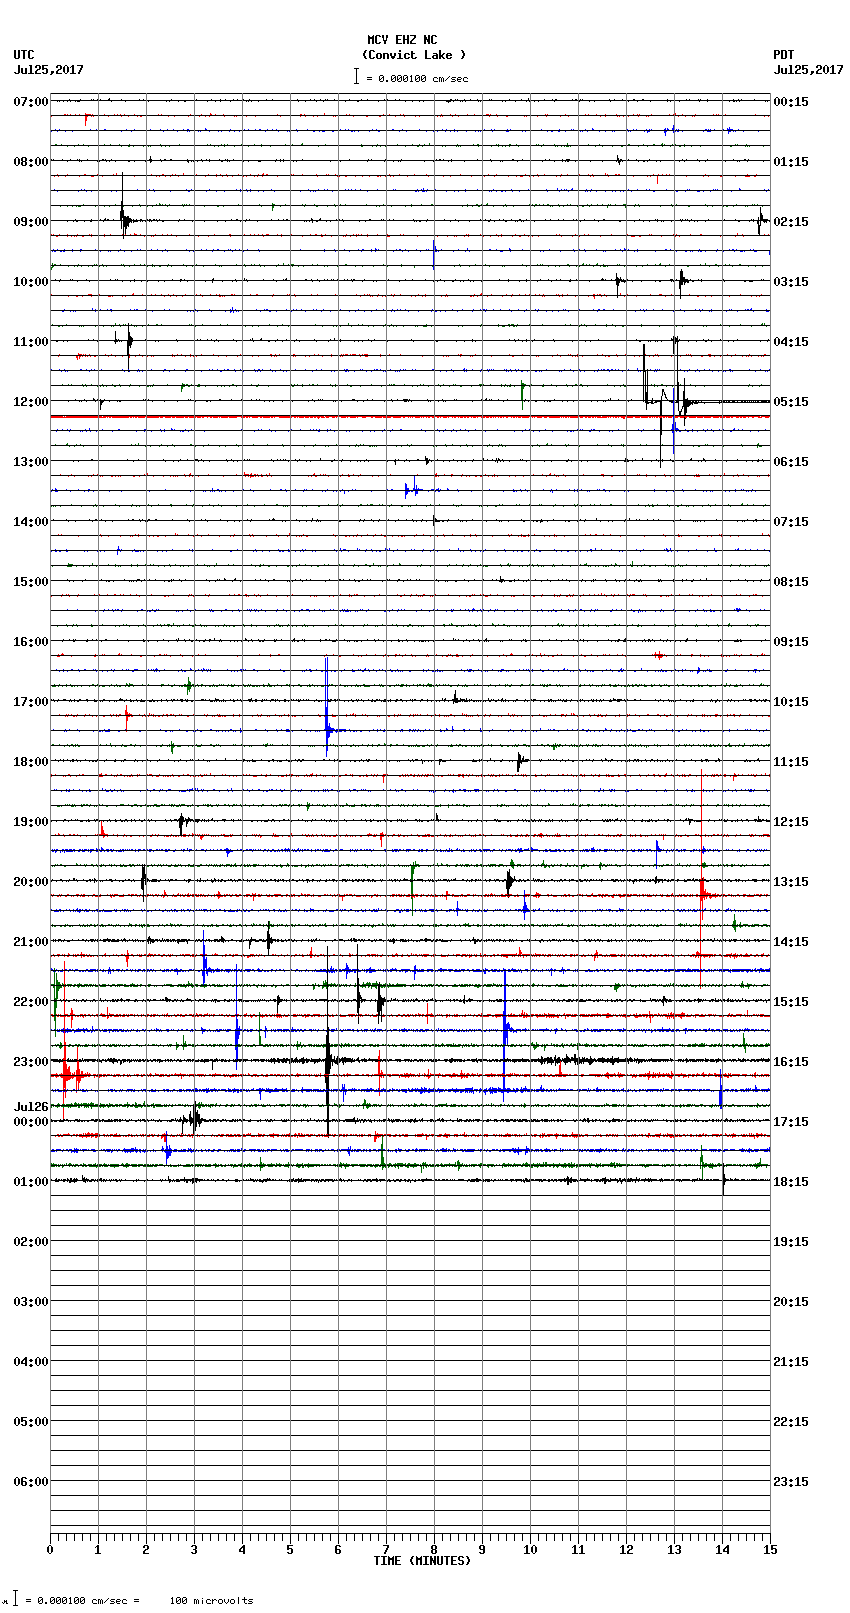 seismogram plot